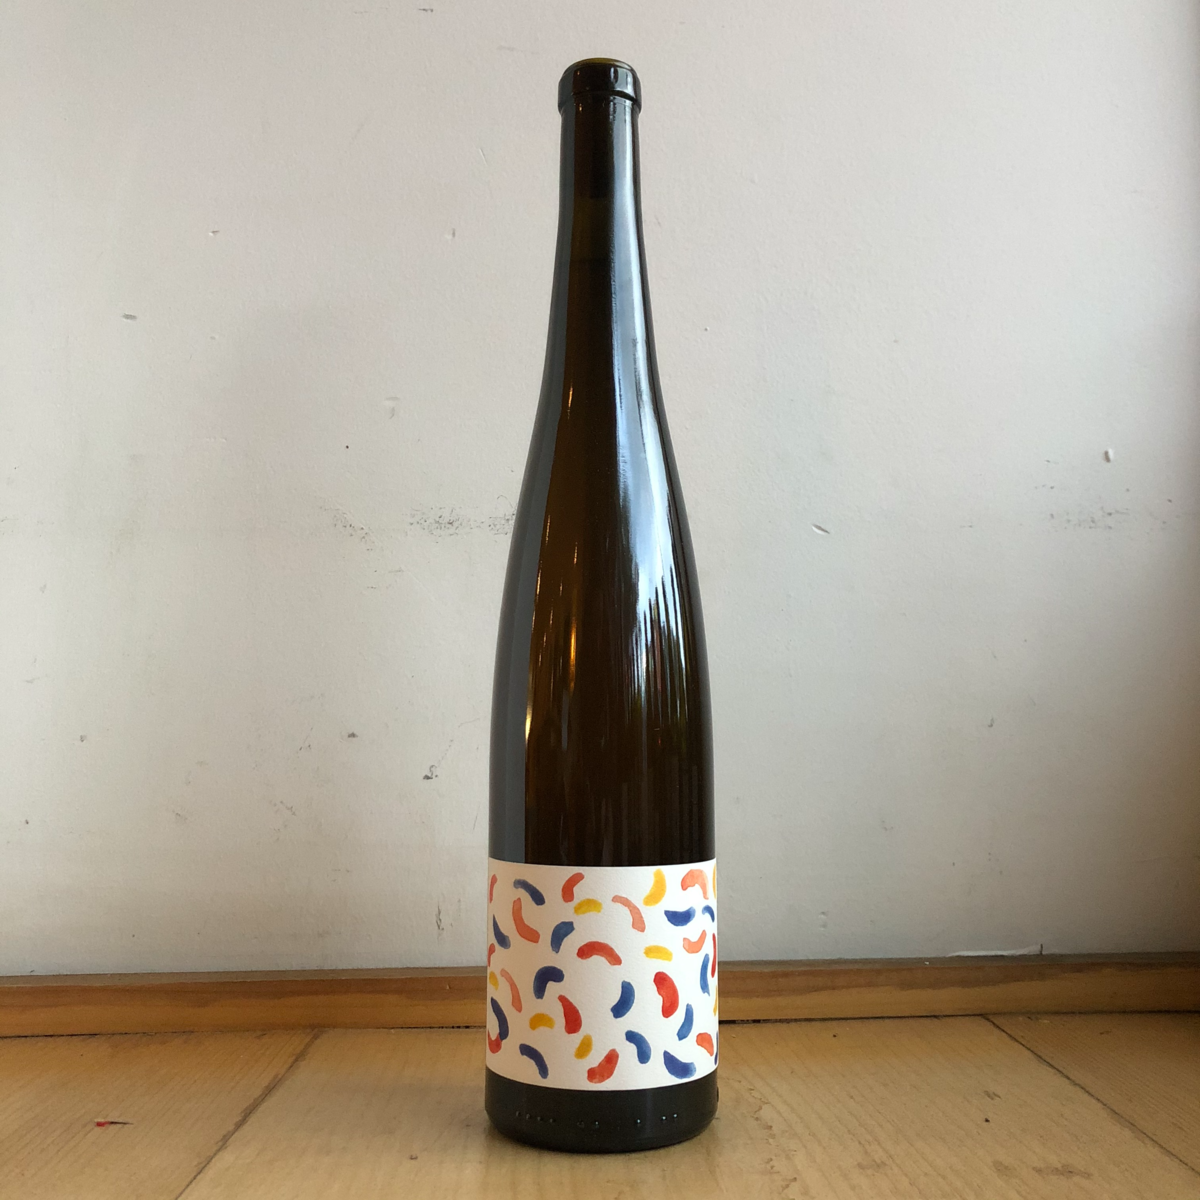 Floral Terranes Cider, "Upland Morraine" 2019